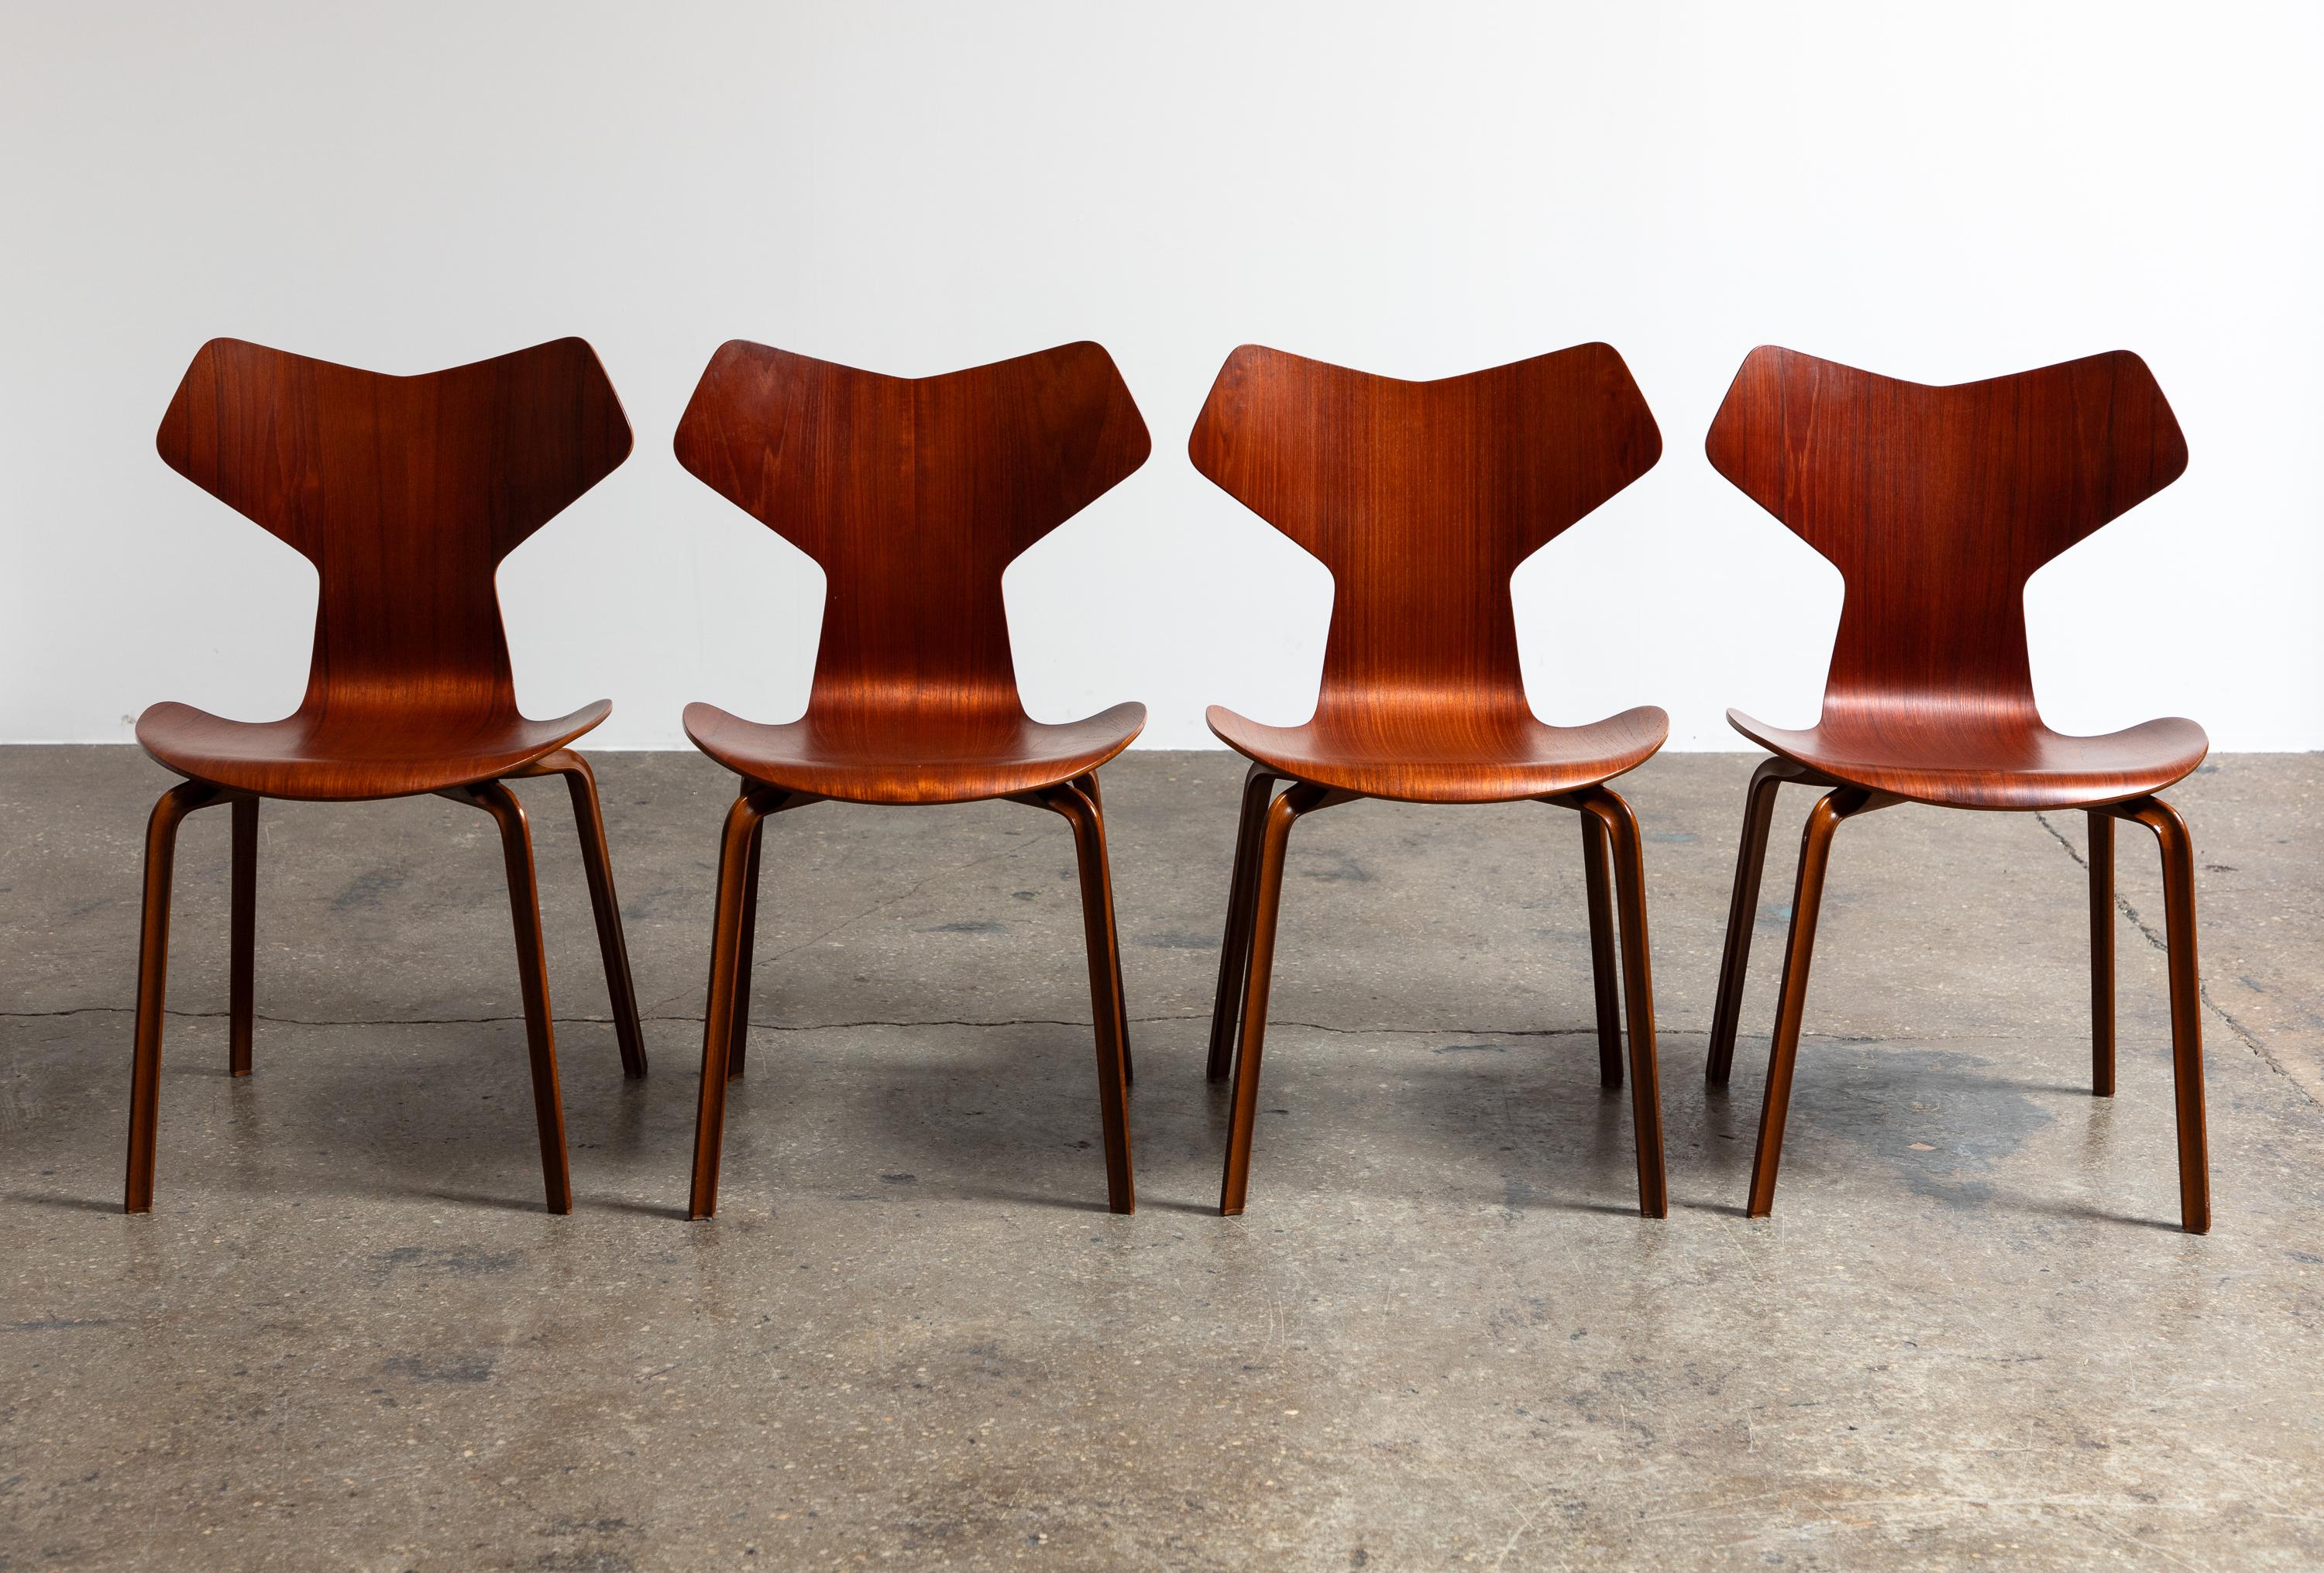 Atemberaubende Grand Prix Stühle, entworfen von Arne Jacobsen für Fritz Hansen. Diese leichten und bequemen Stühle sind in einem guten Vintage-Zustand mit einer schönen Auswahl an warmem Teakholz. Die Stühle sind kaum benutzt worden, und ihre